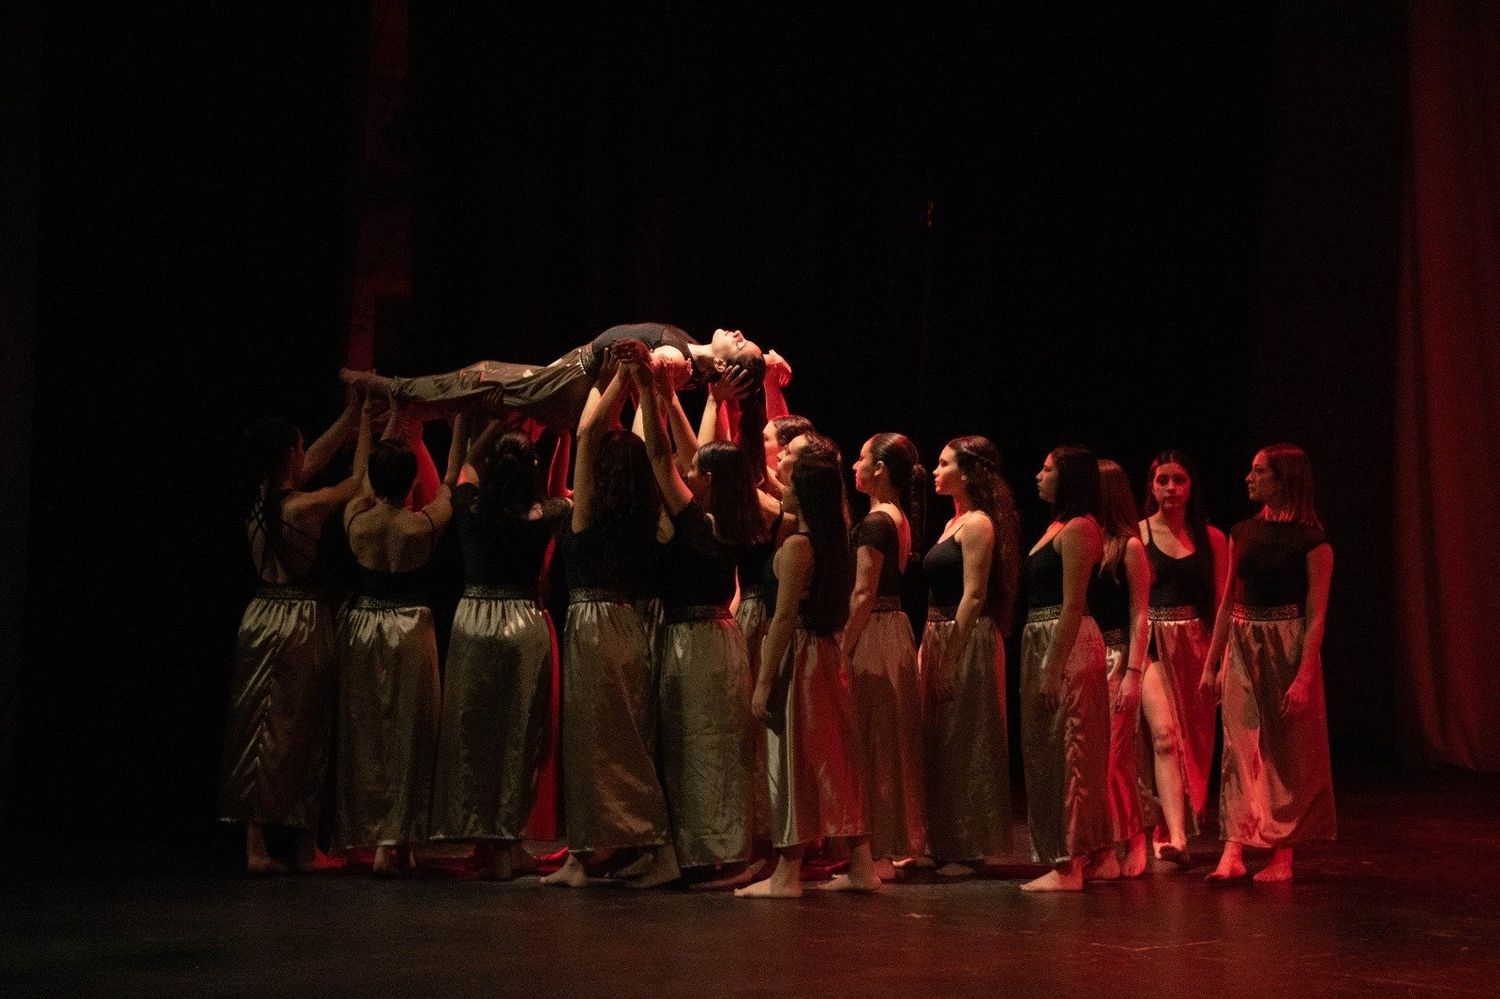 La institución constituye un semillero para que la danza crezca y evolucione en Mar del Plata.